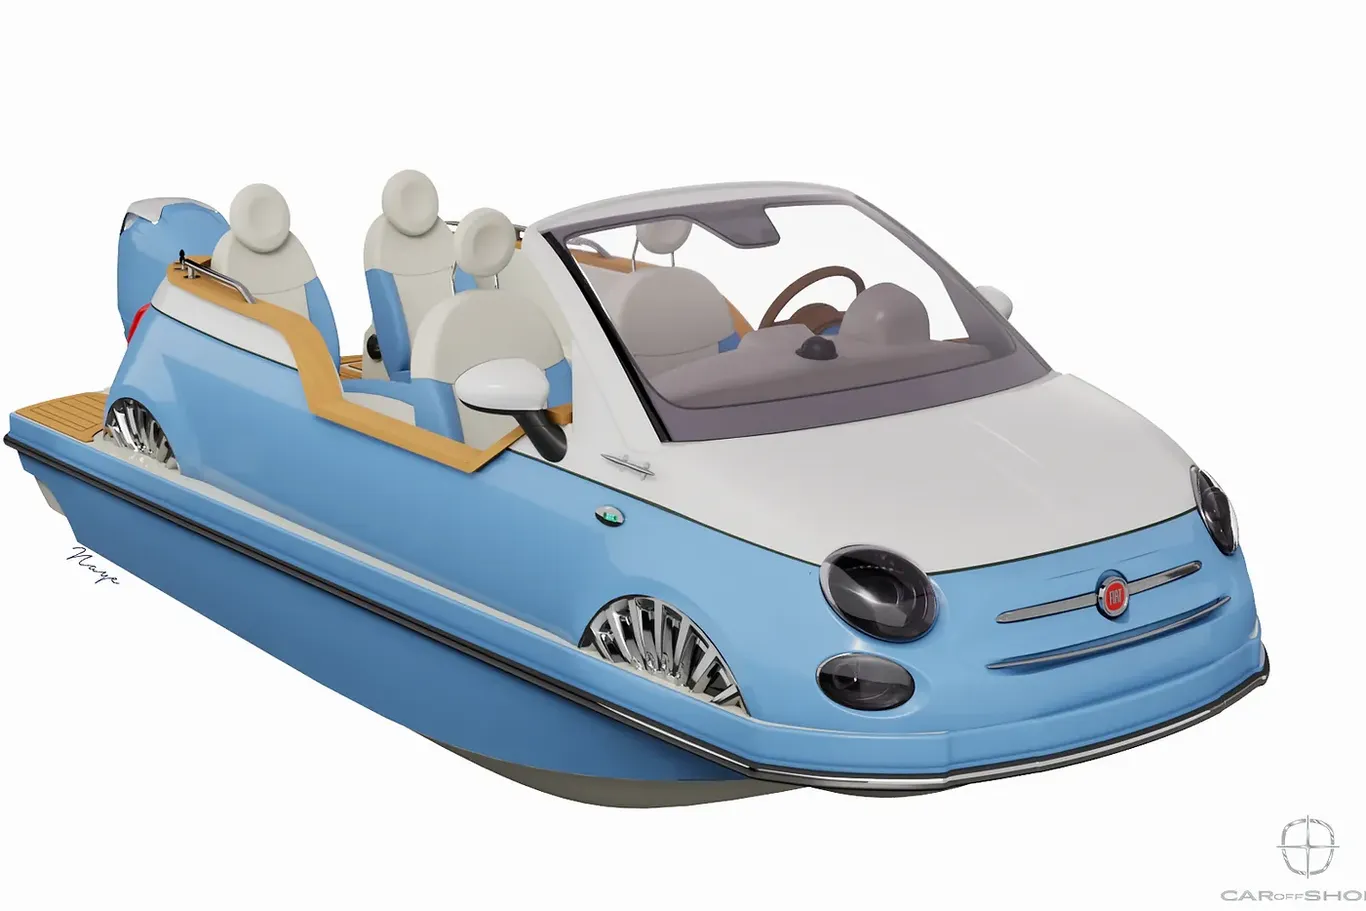 Boot mit Kleinwagen-Charme: Das Boot des Herstellers Car off-Shore.